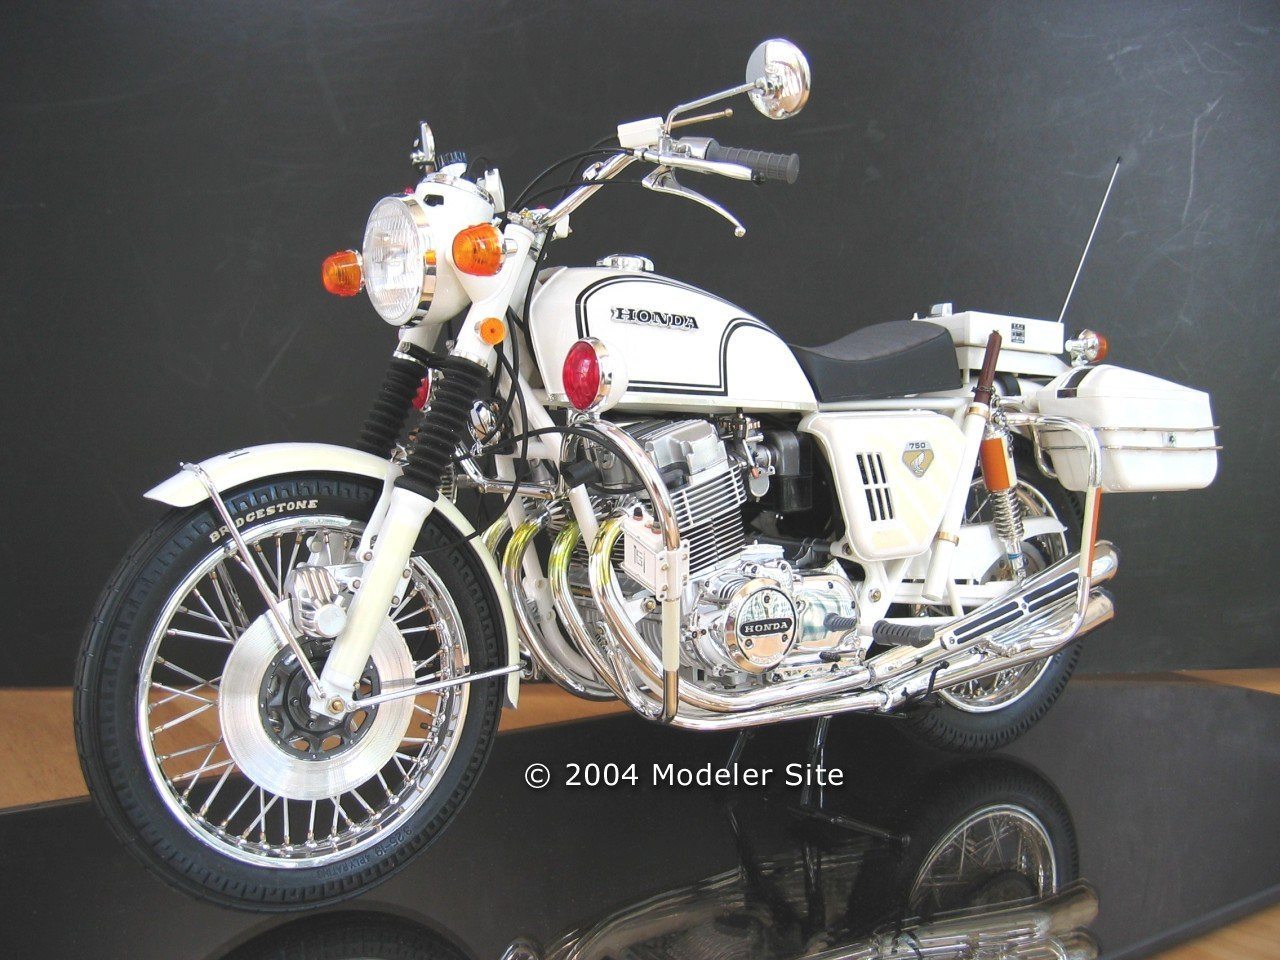 Honda CB750F Tamiya 14006 1:12 Scale Motorcycle Body Model Kit Assembly DIY Toy 